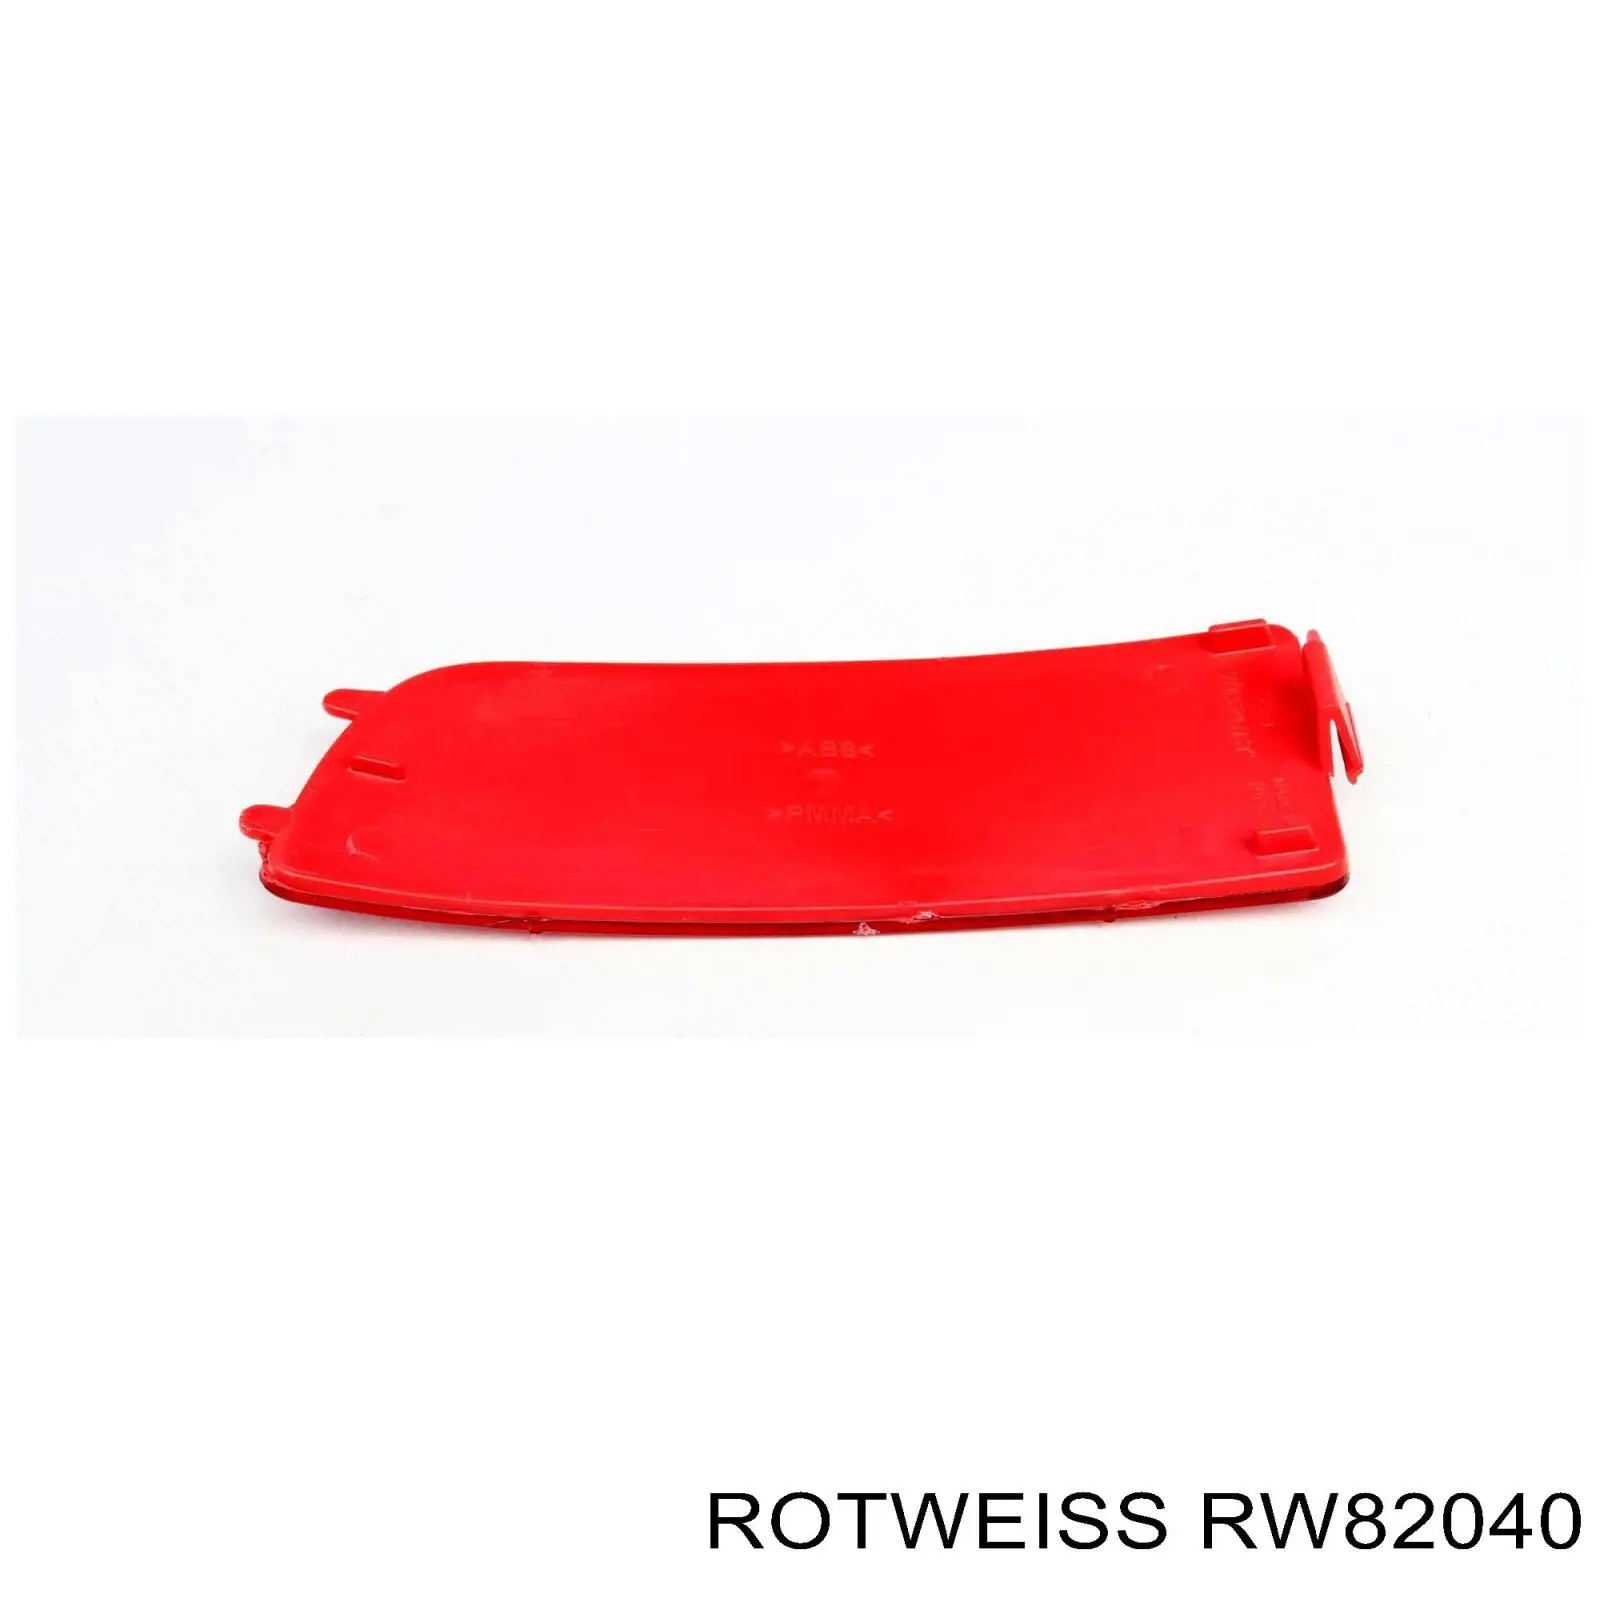 RW82040 Rotweiss катафот (отражатель заднего бампера левый)